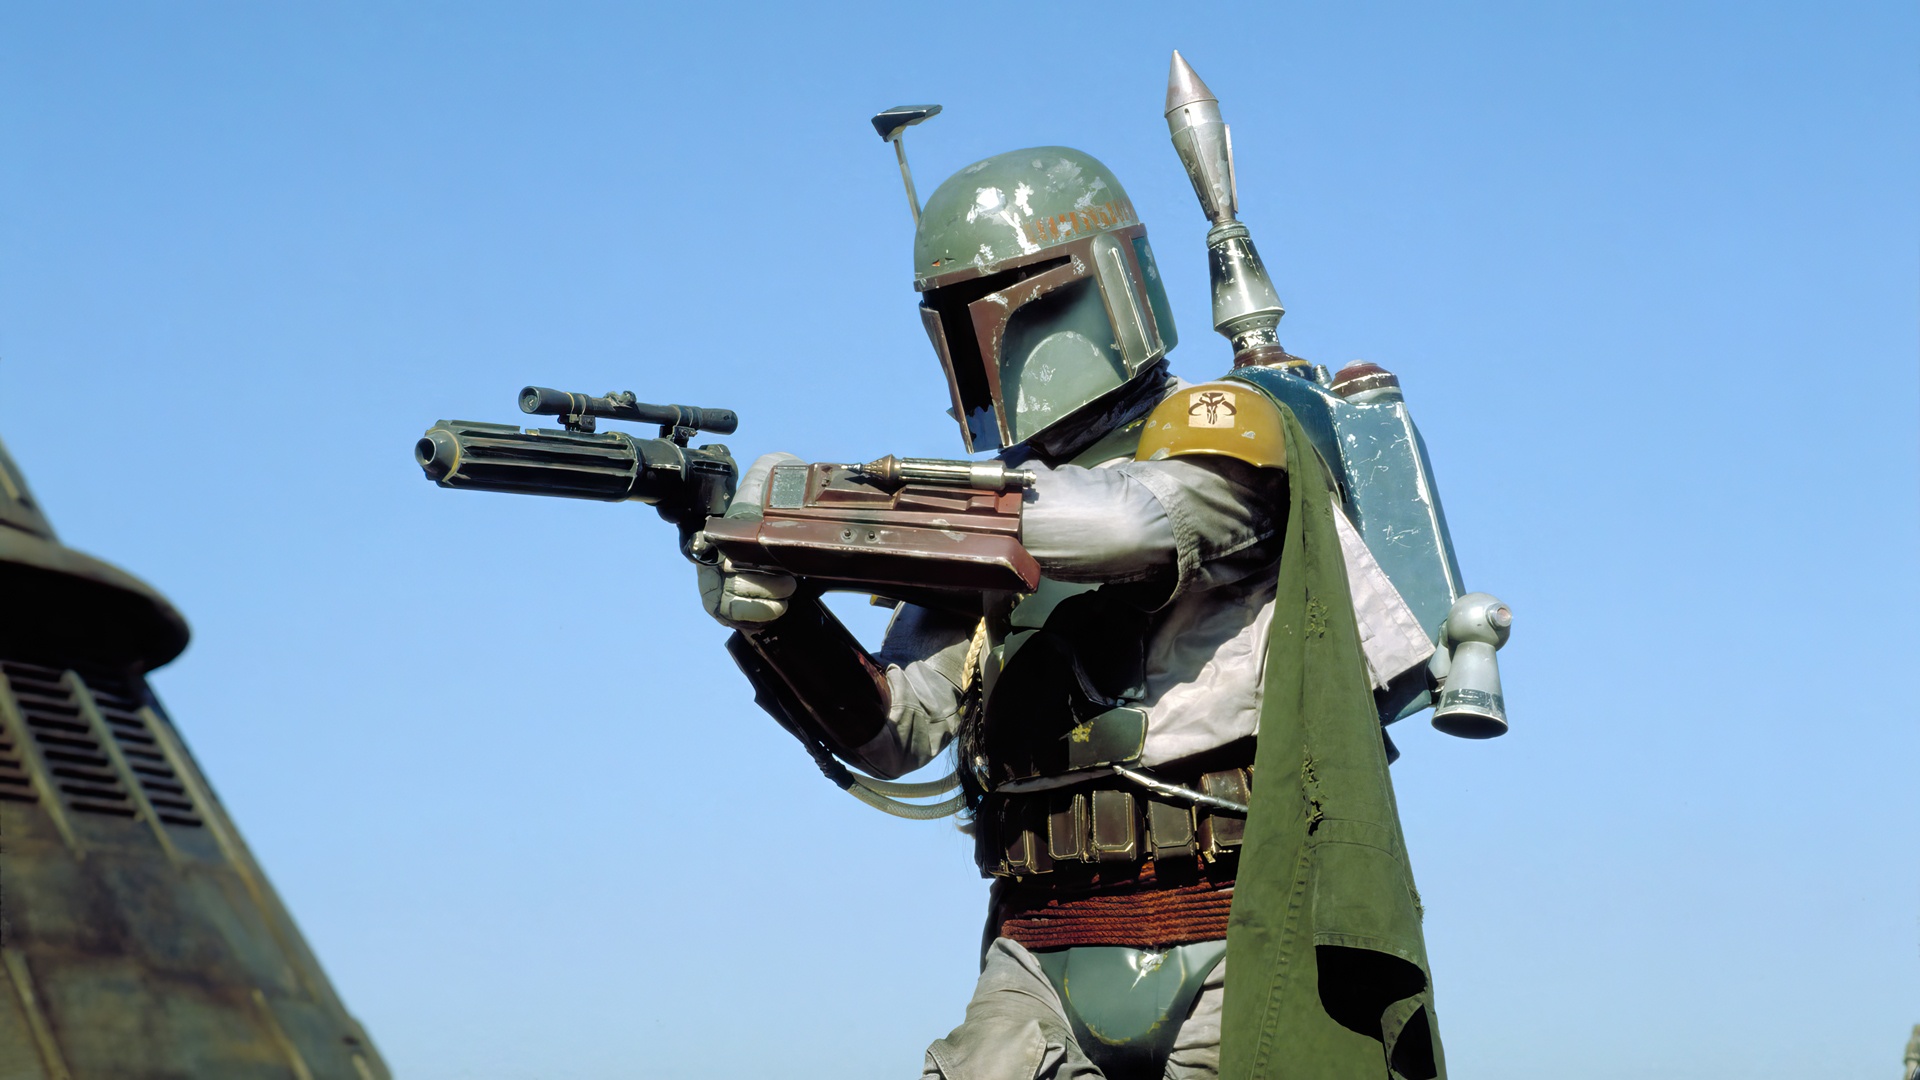 Star Wars Return Of The Jedi Boba Fett Blaster Movies Film Stills Armor Minimalism Simple Background 1920x1080